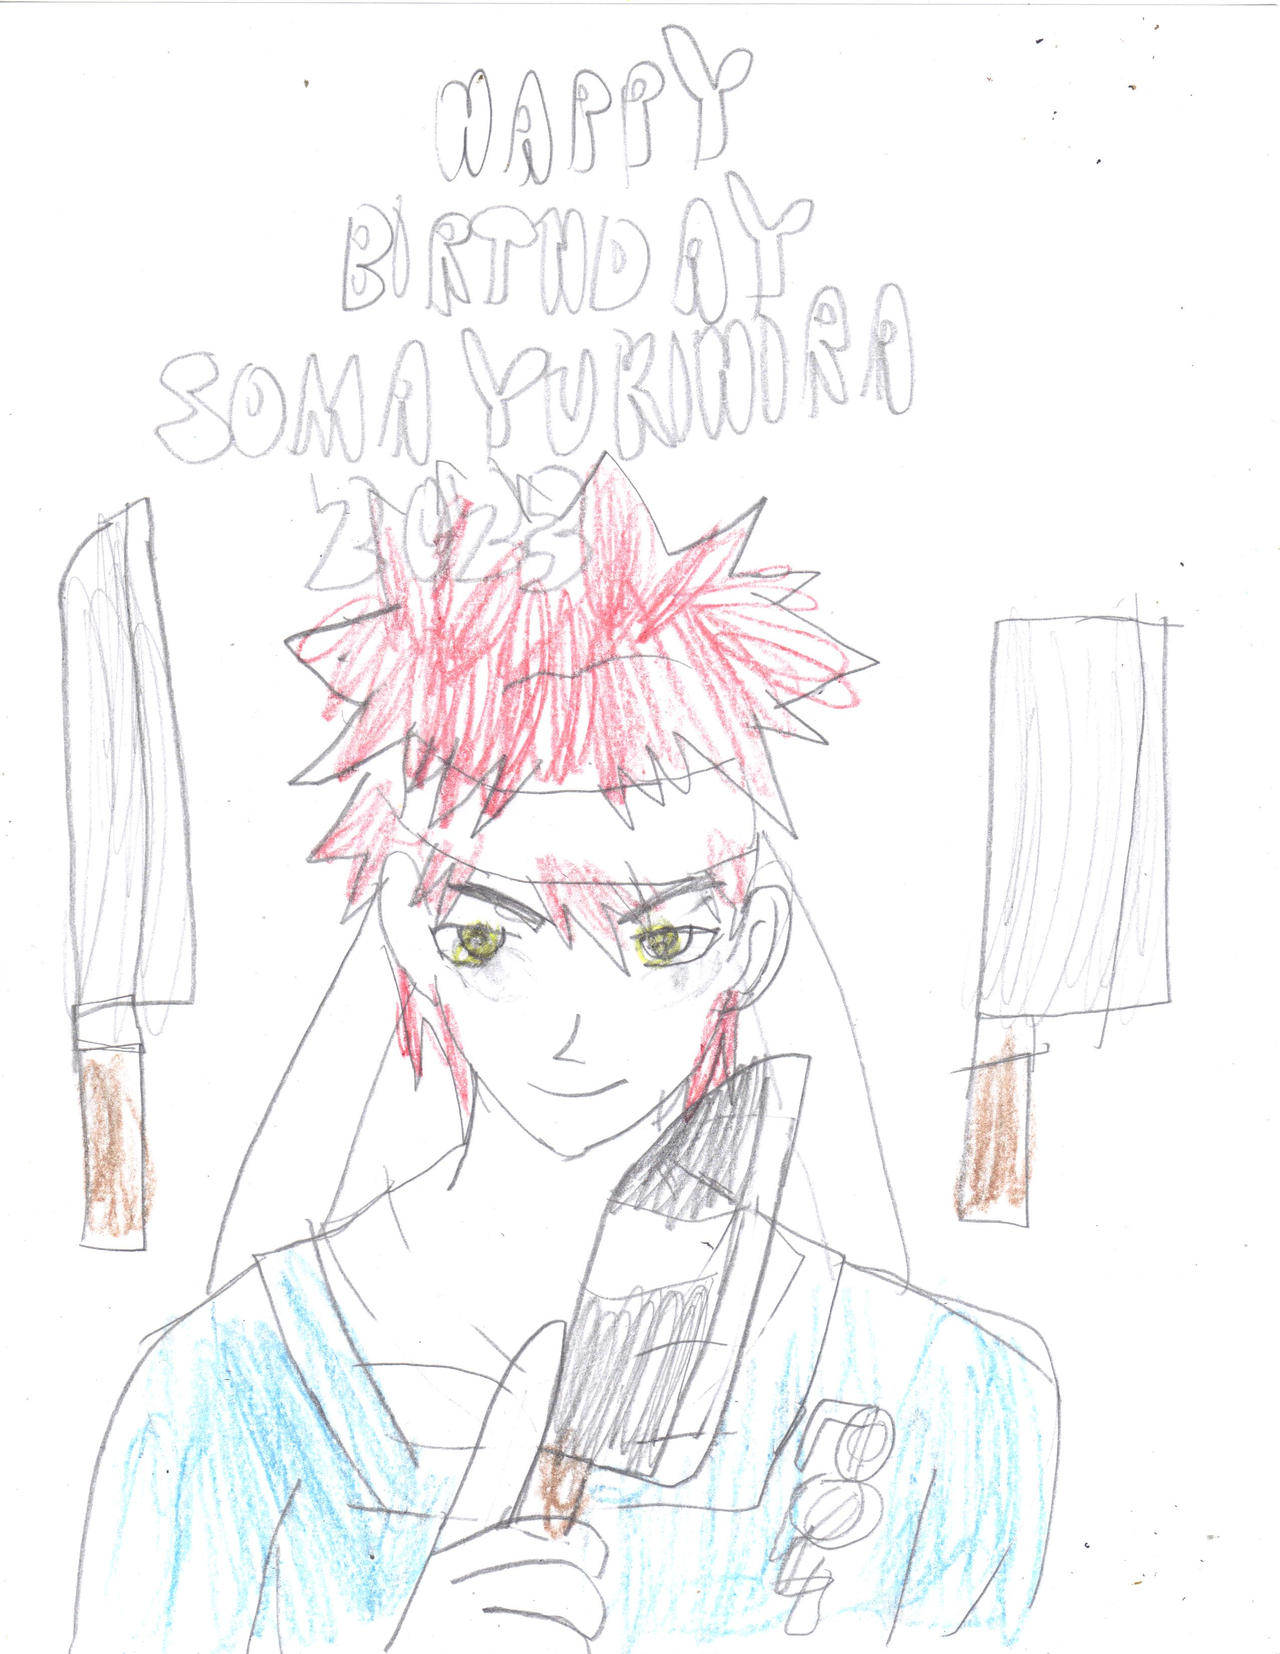 Food Wars: Shokugeki no Soma - 11/6 - Happy Birthday Soma